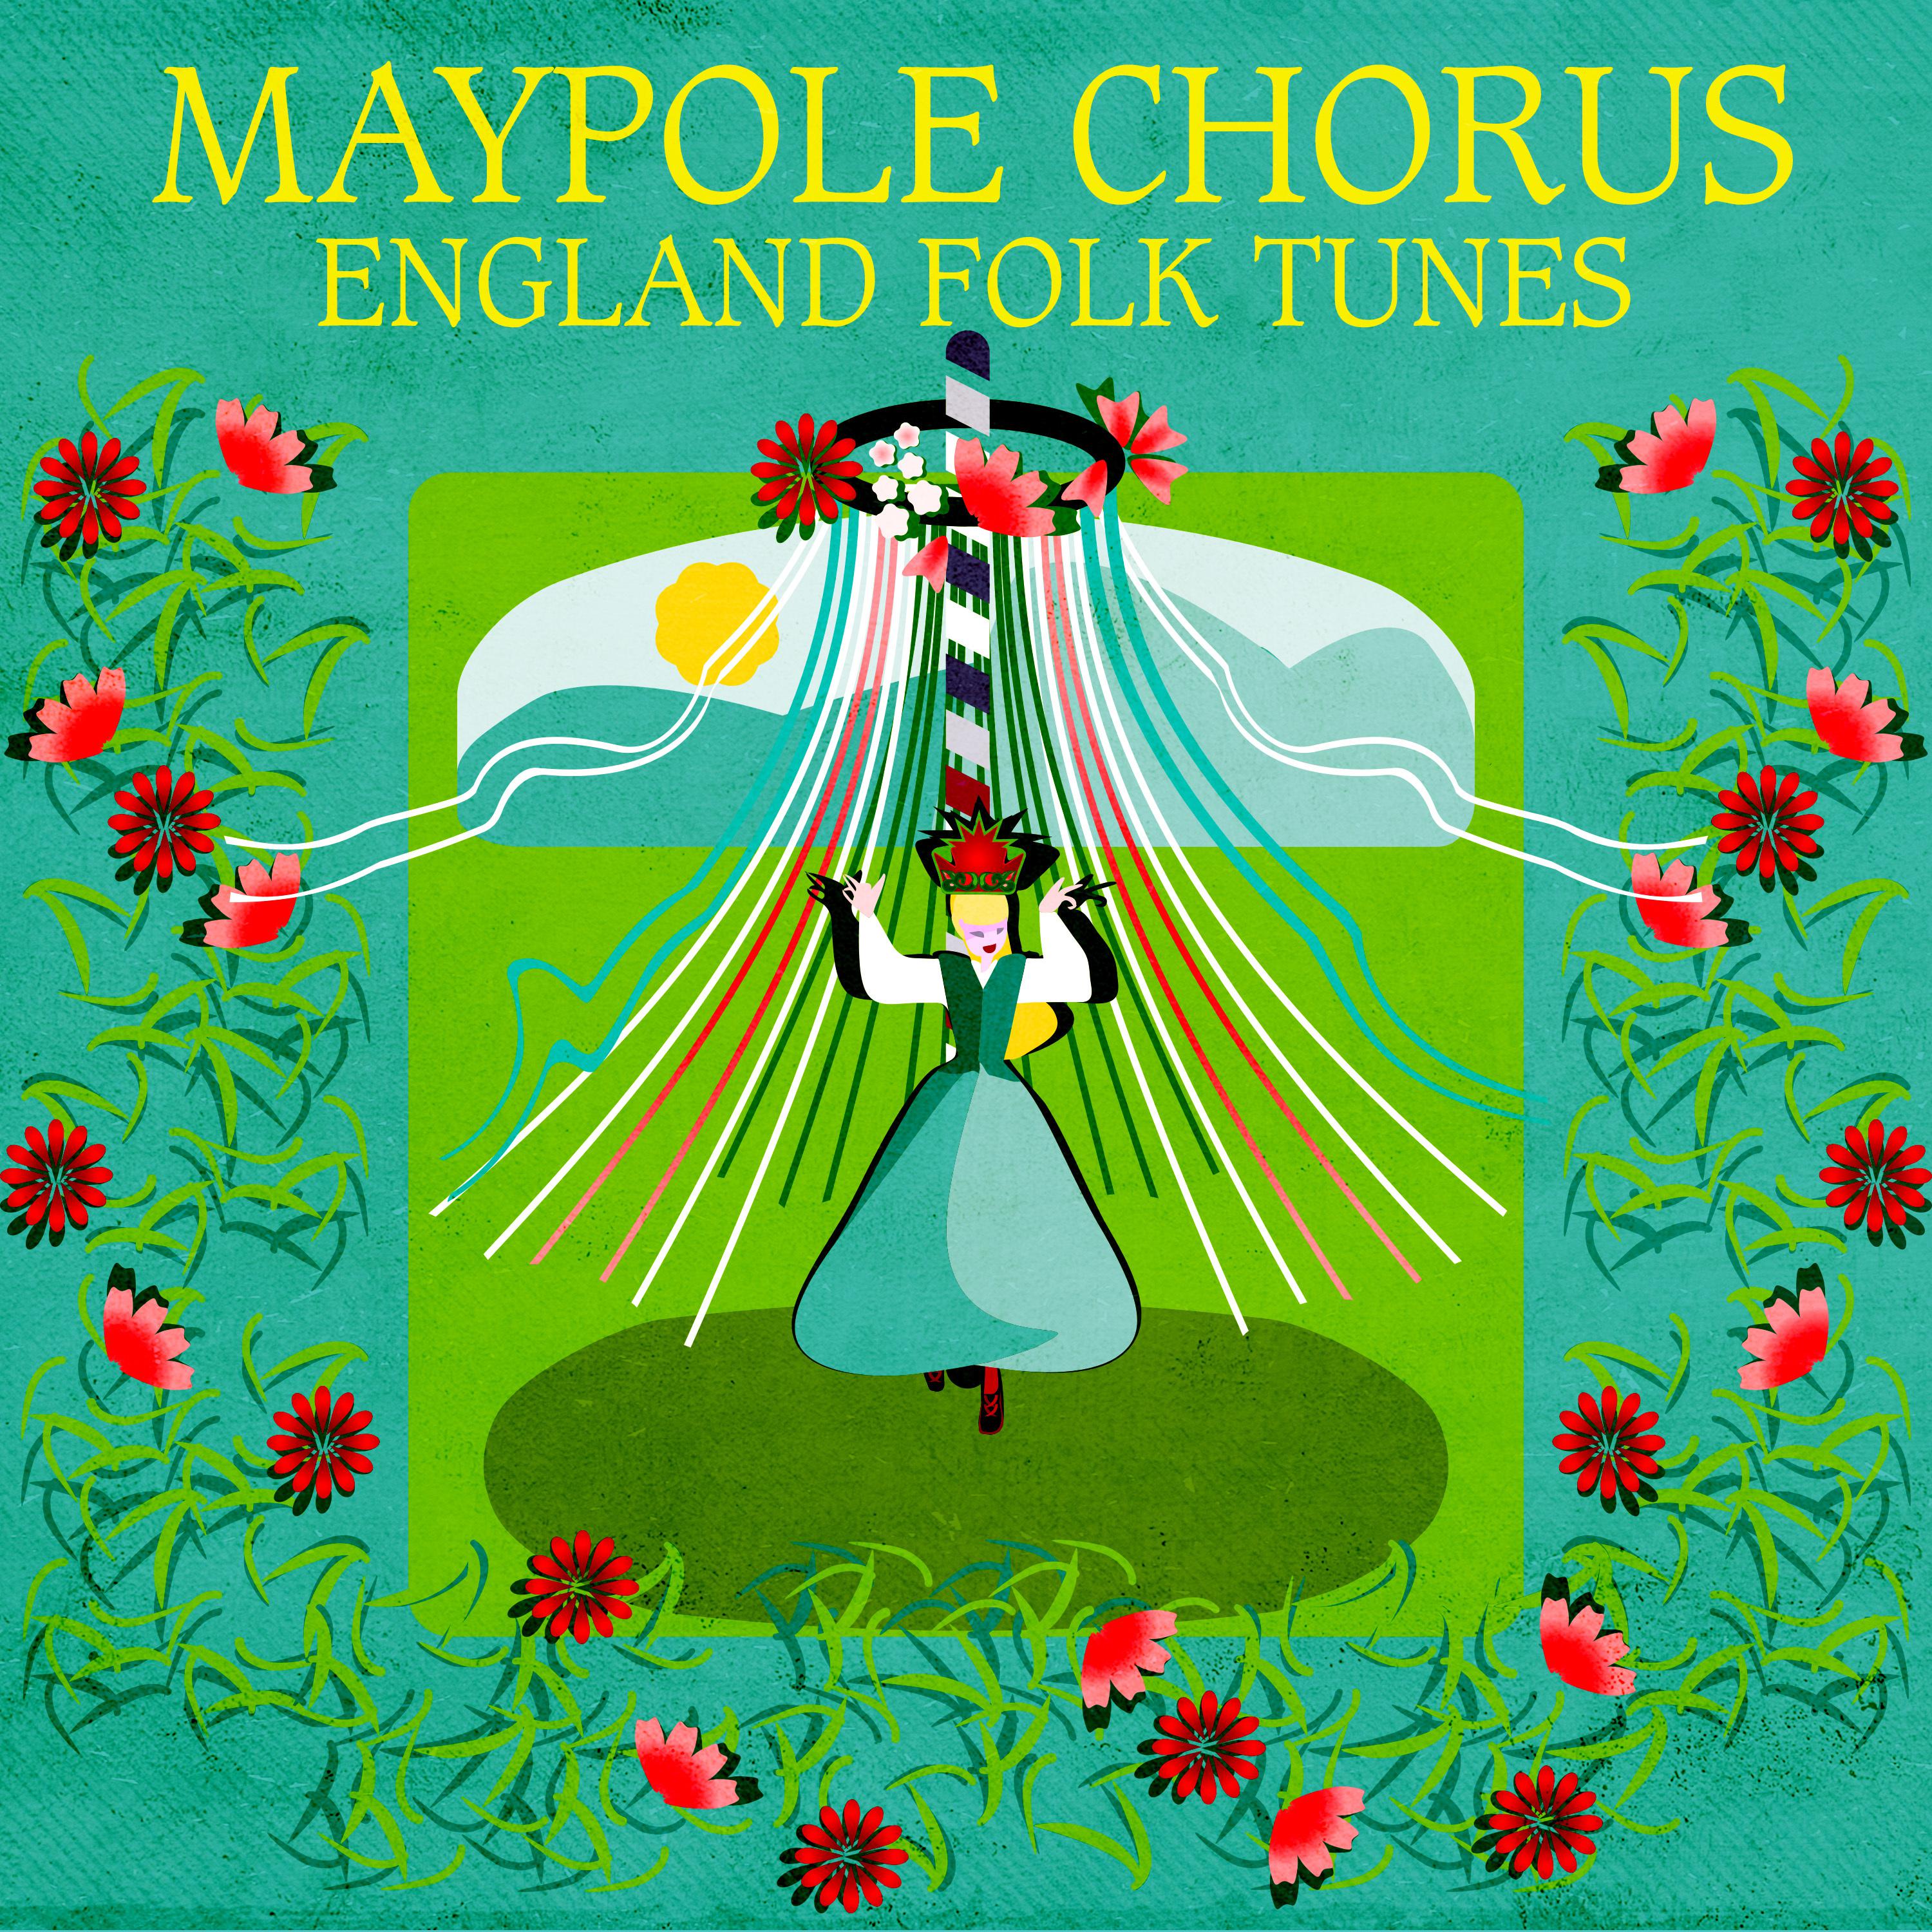 England Folk Tunes